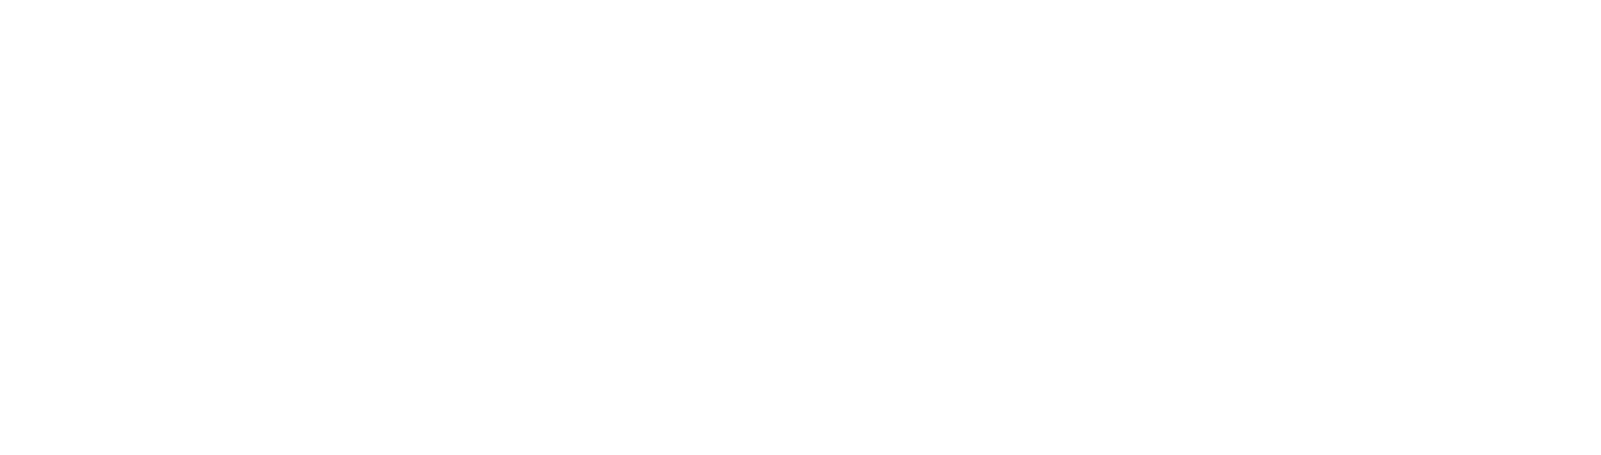 Tredegar logo grand pour les fonds sombres (PNG transparent)